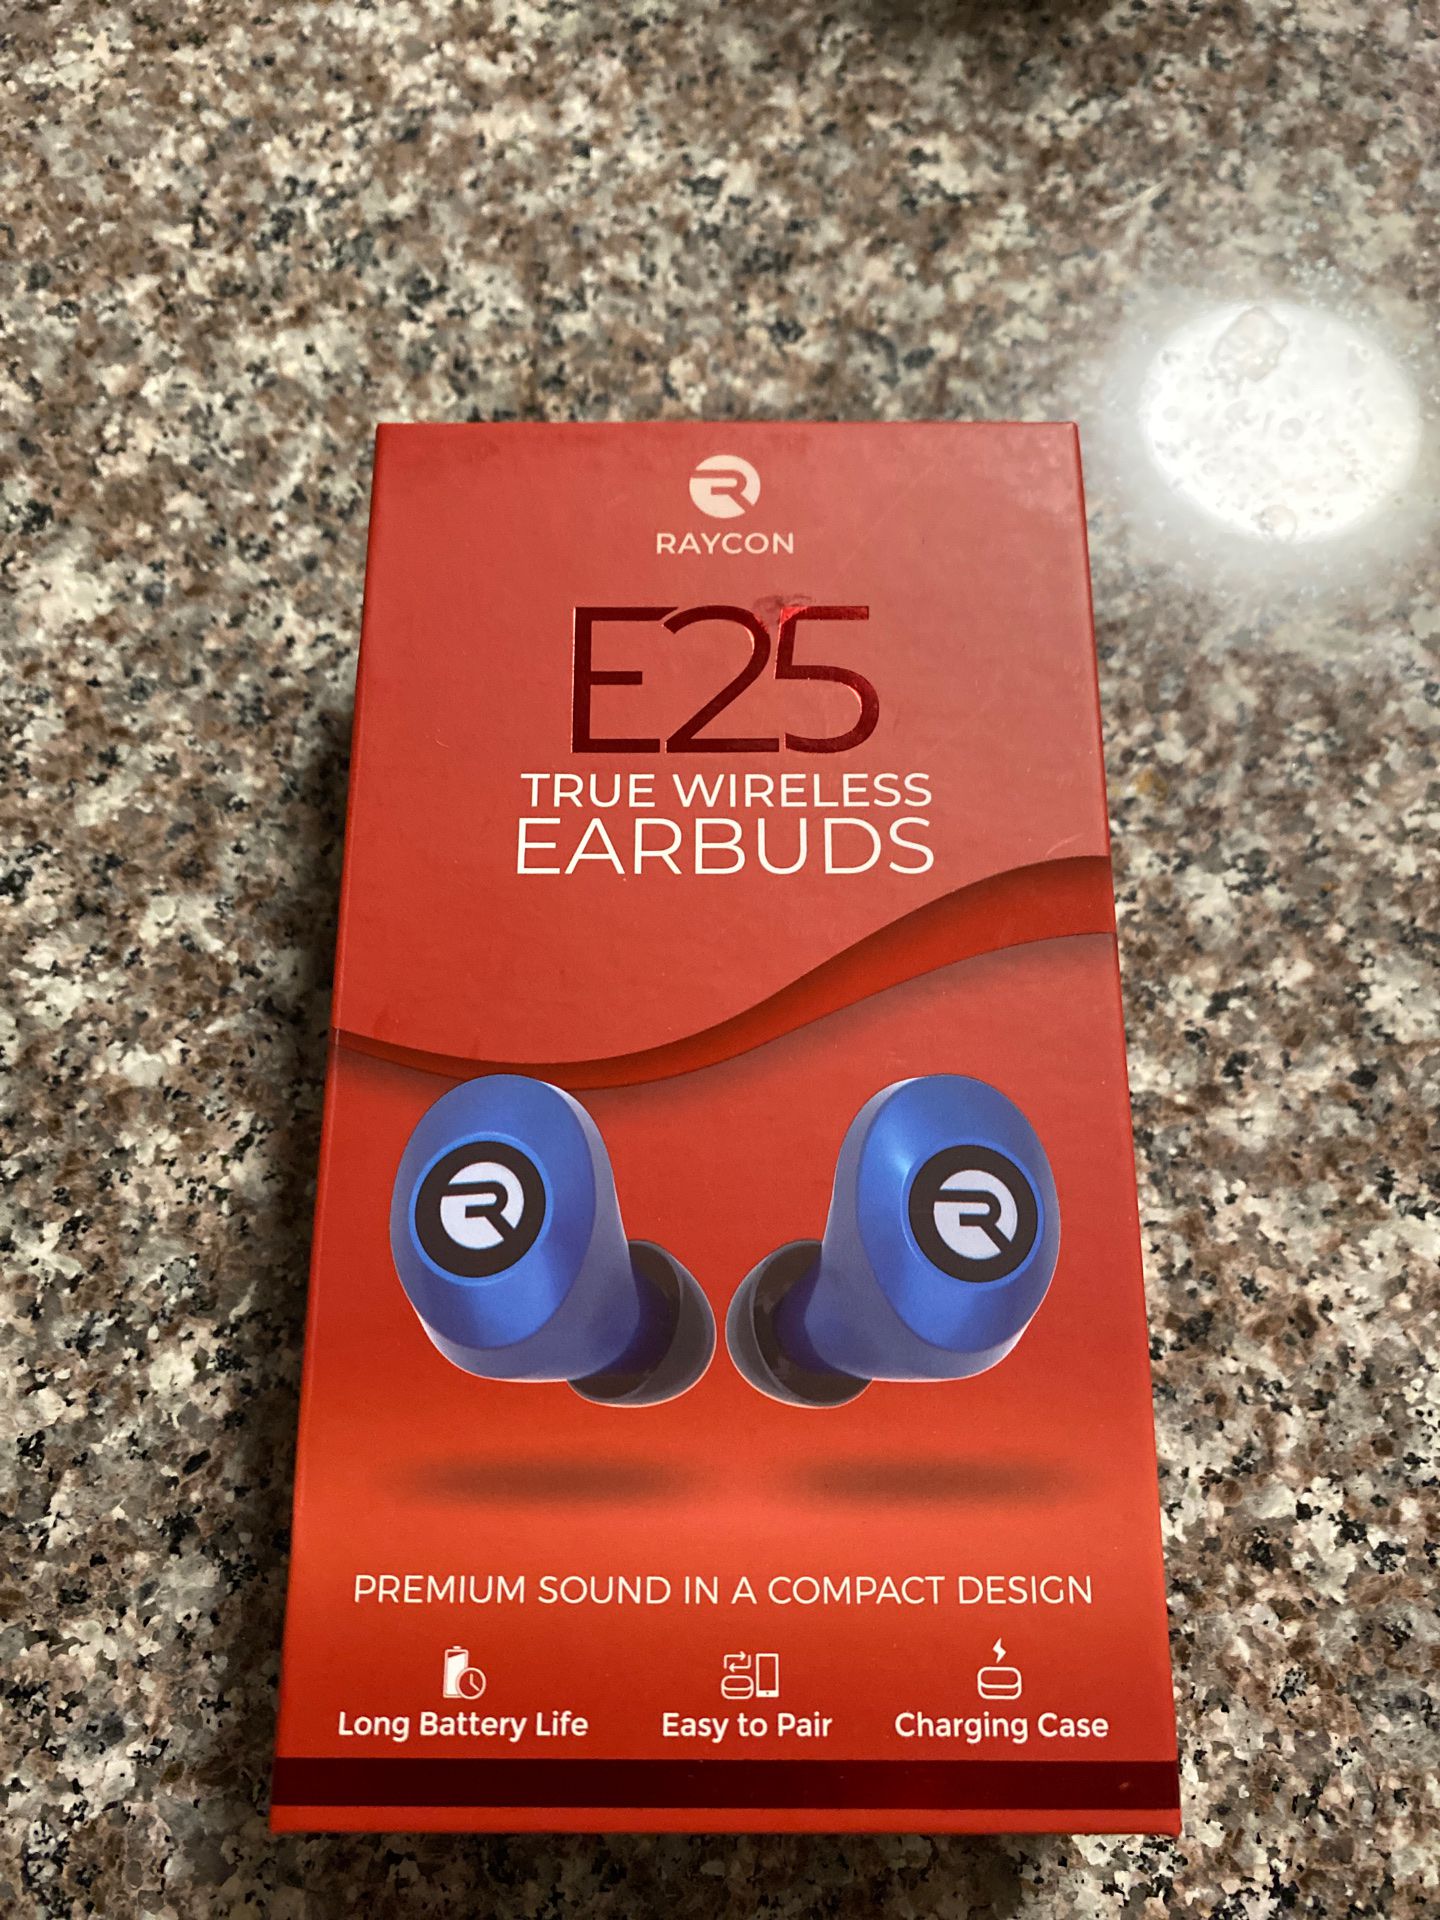 New Raycon E25 wireless earbuds